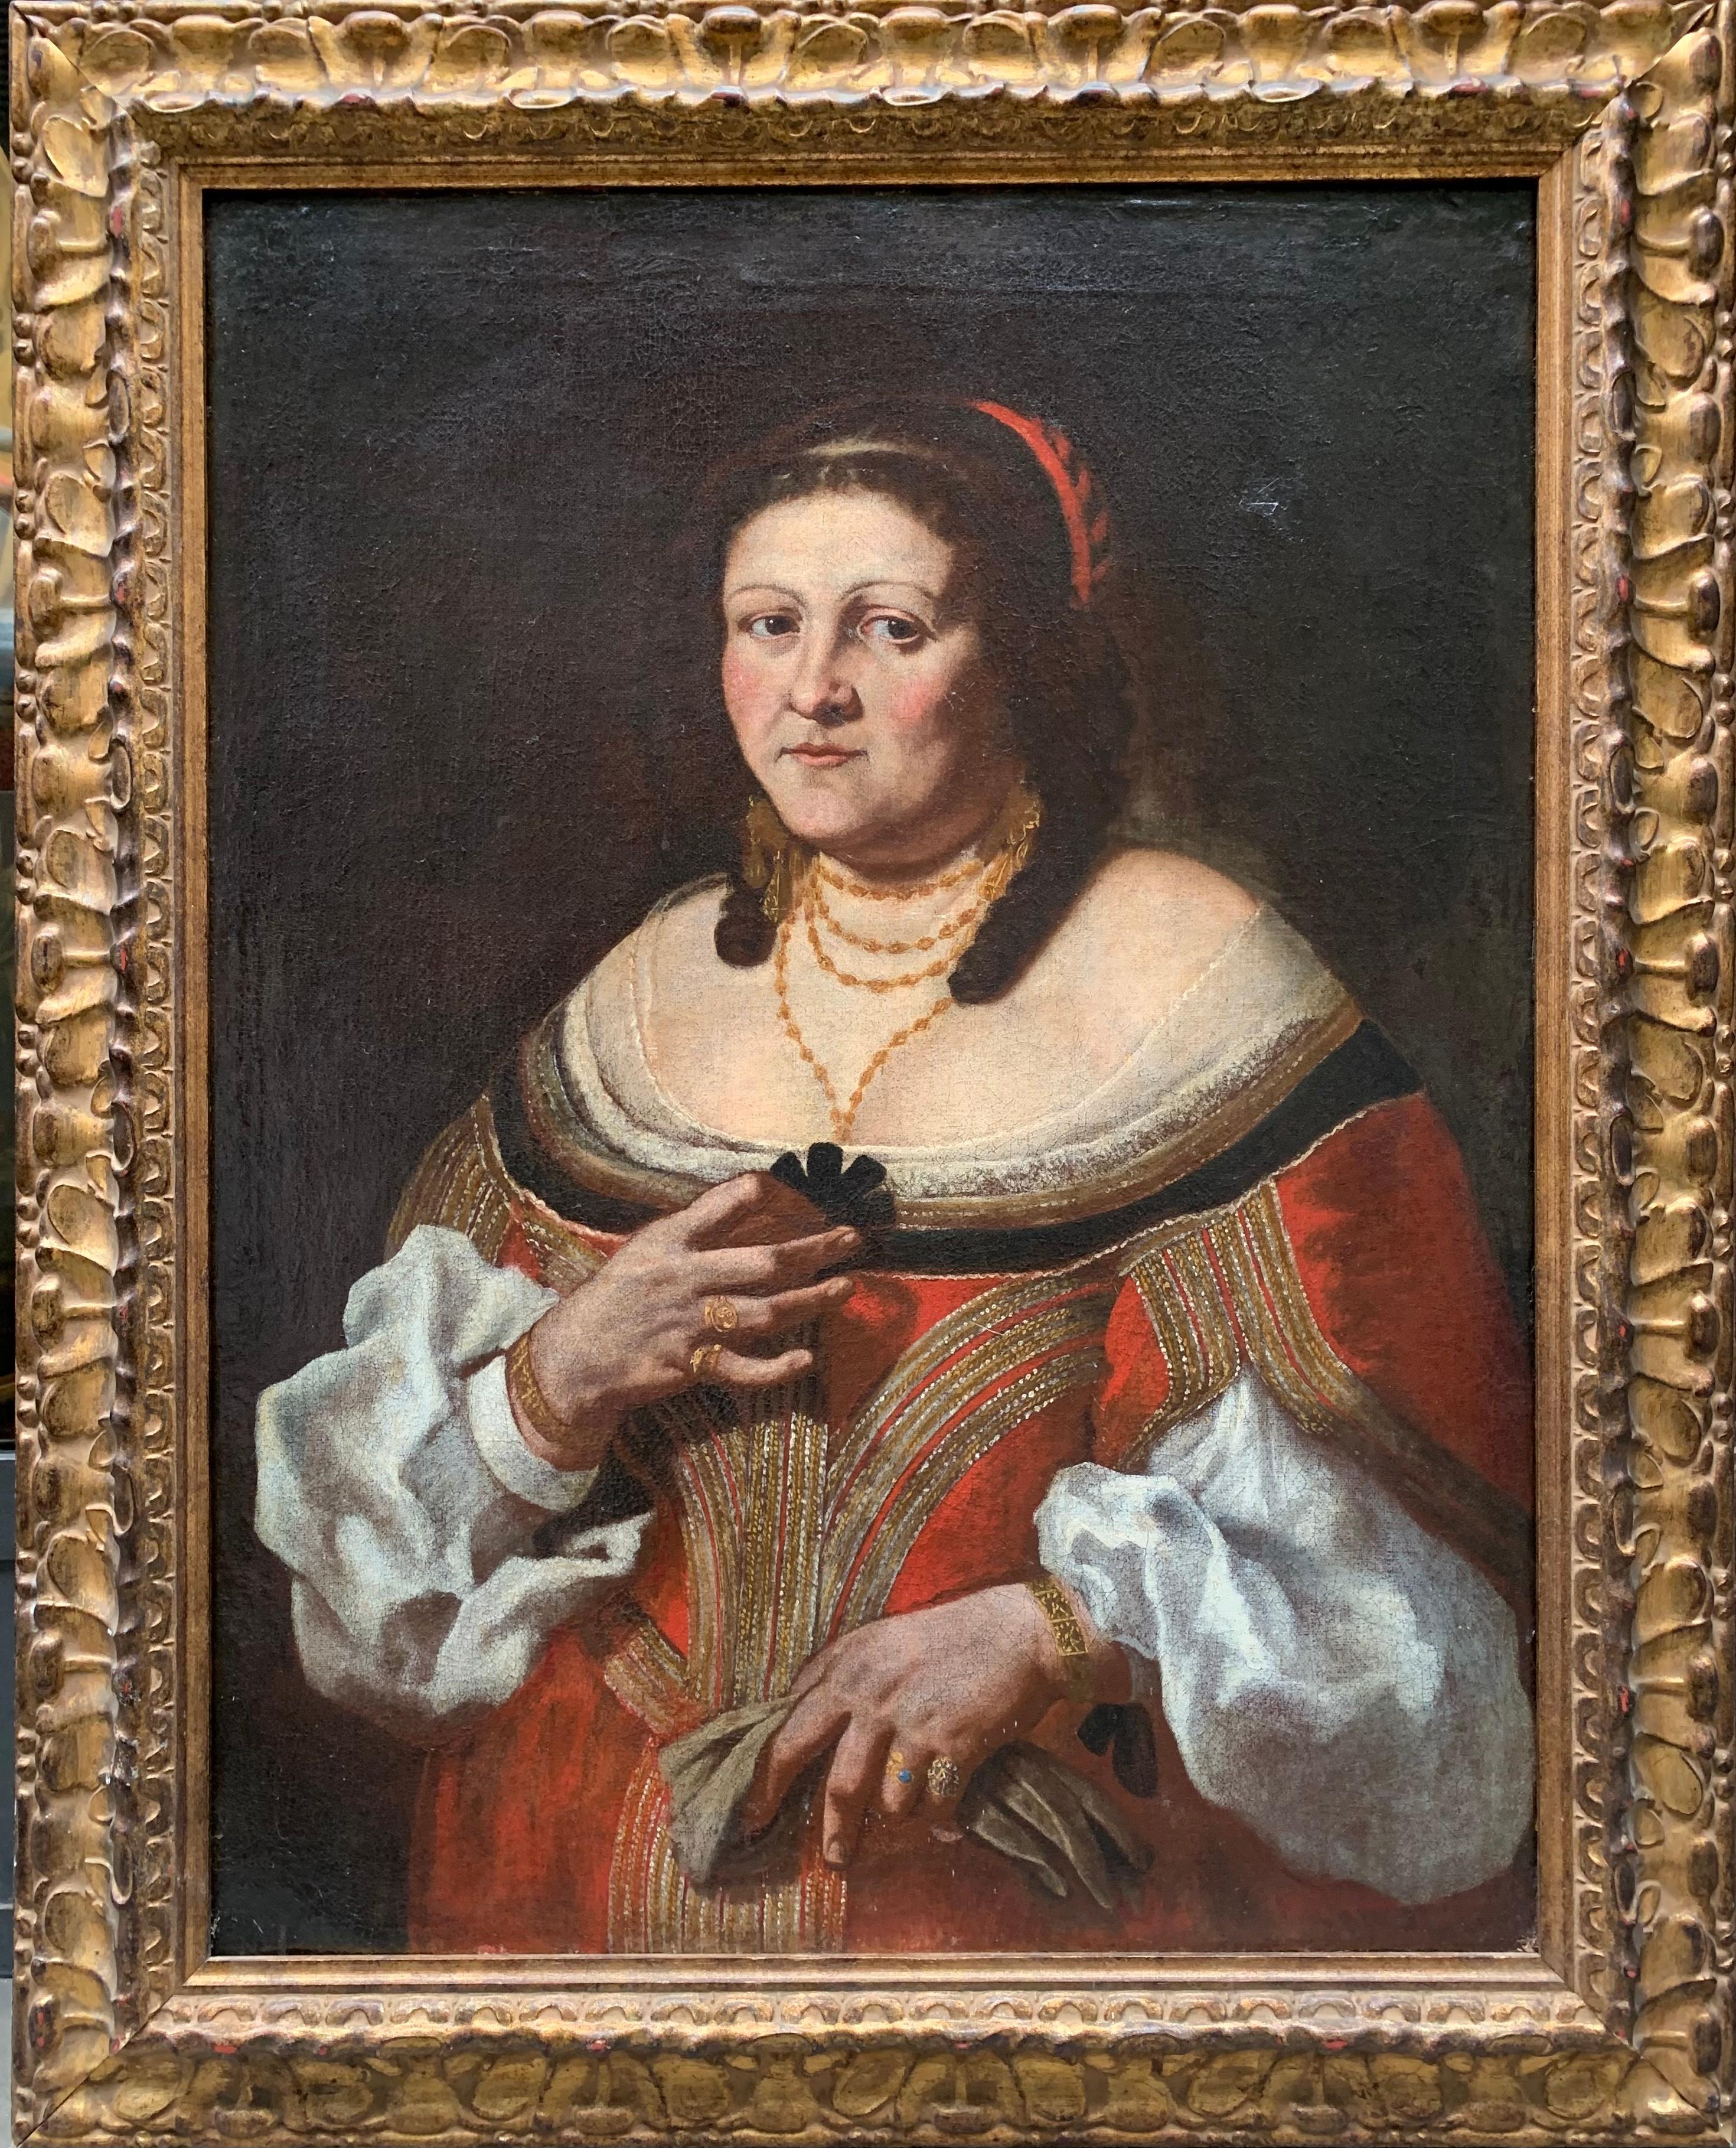 Portrait d'une femme noble. 
Attribué à Carlo Ceresa. (1609 - 1679, Bergame)
Huile sur toile.

Taille cm 110x86,5cm avec cadre

Vers 1640.

Ce portrait représente une femme d'âge mûr avec un grand réalisme, typique des peintres lombards et